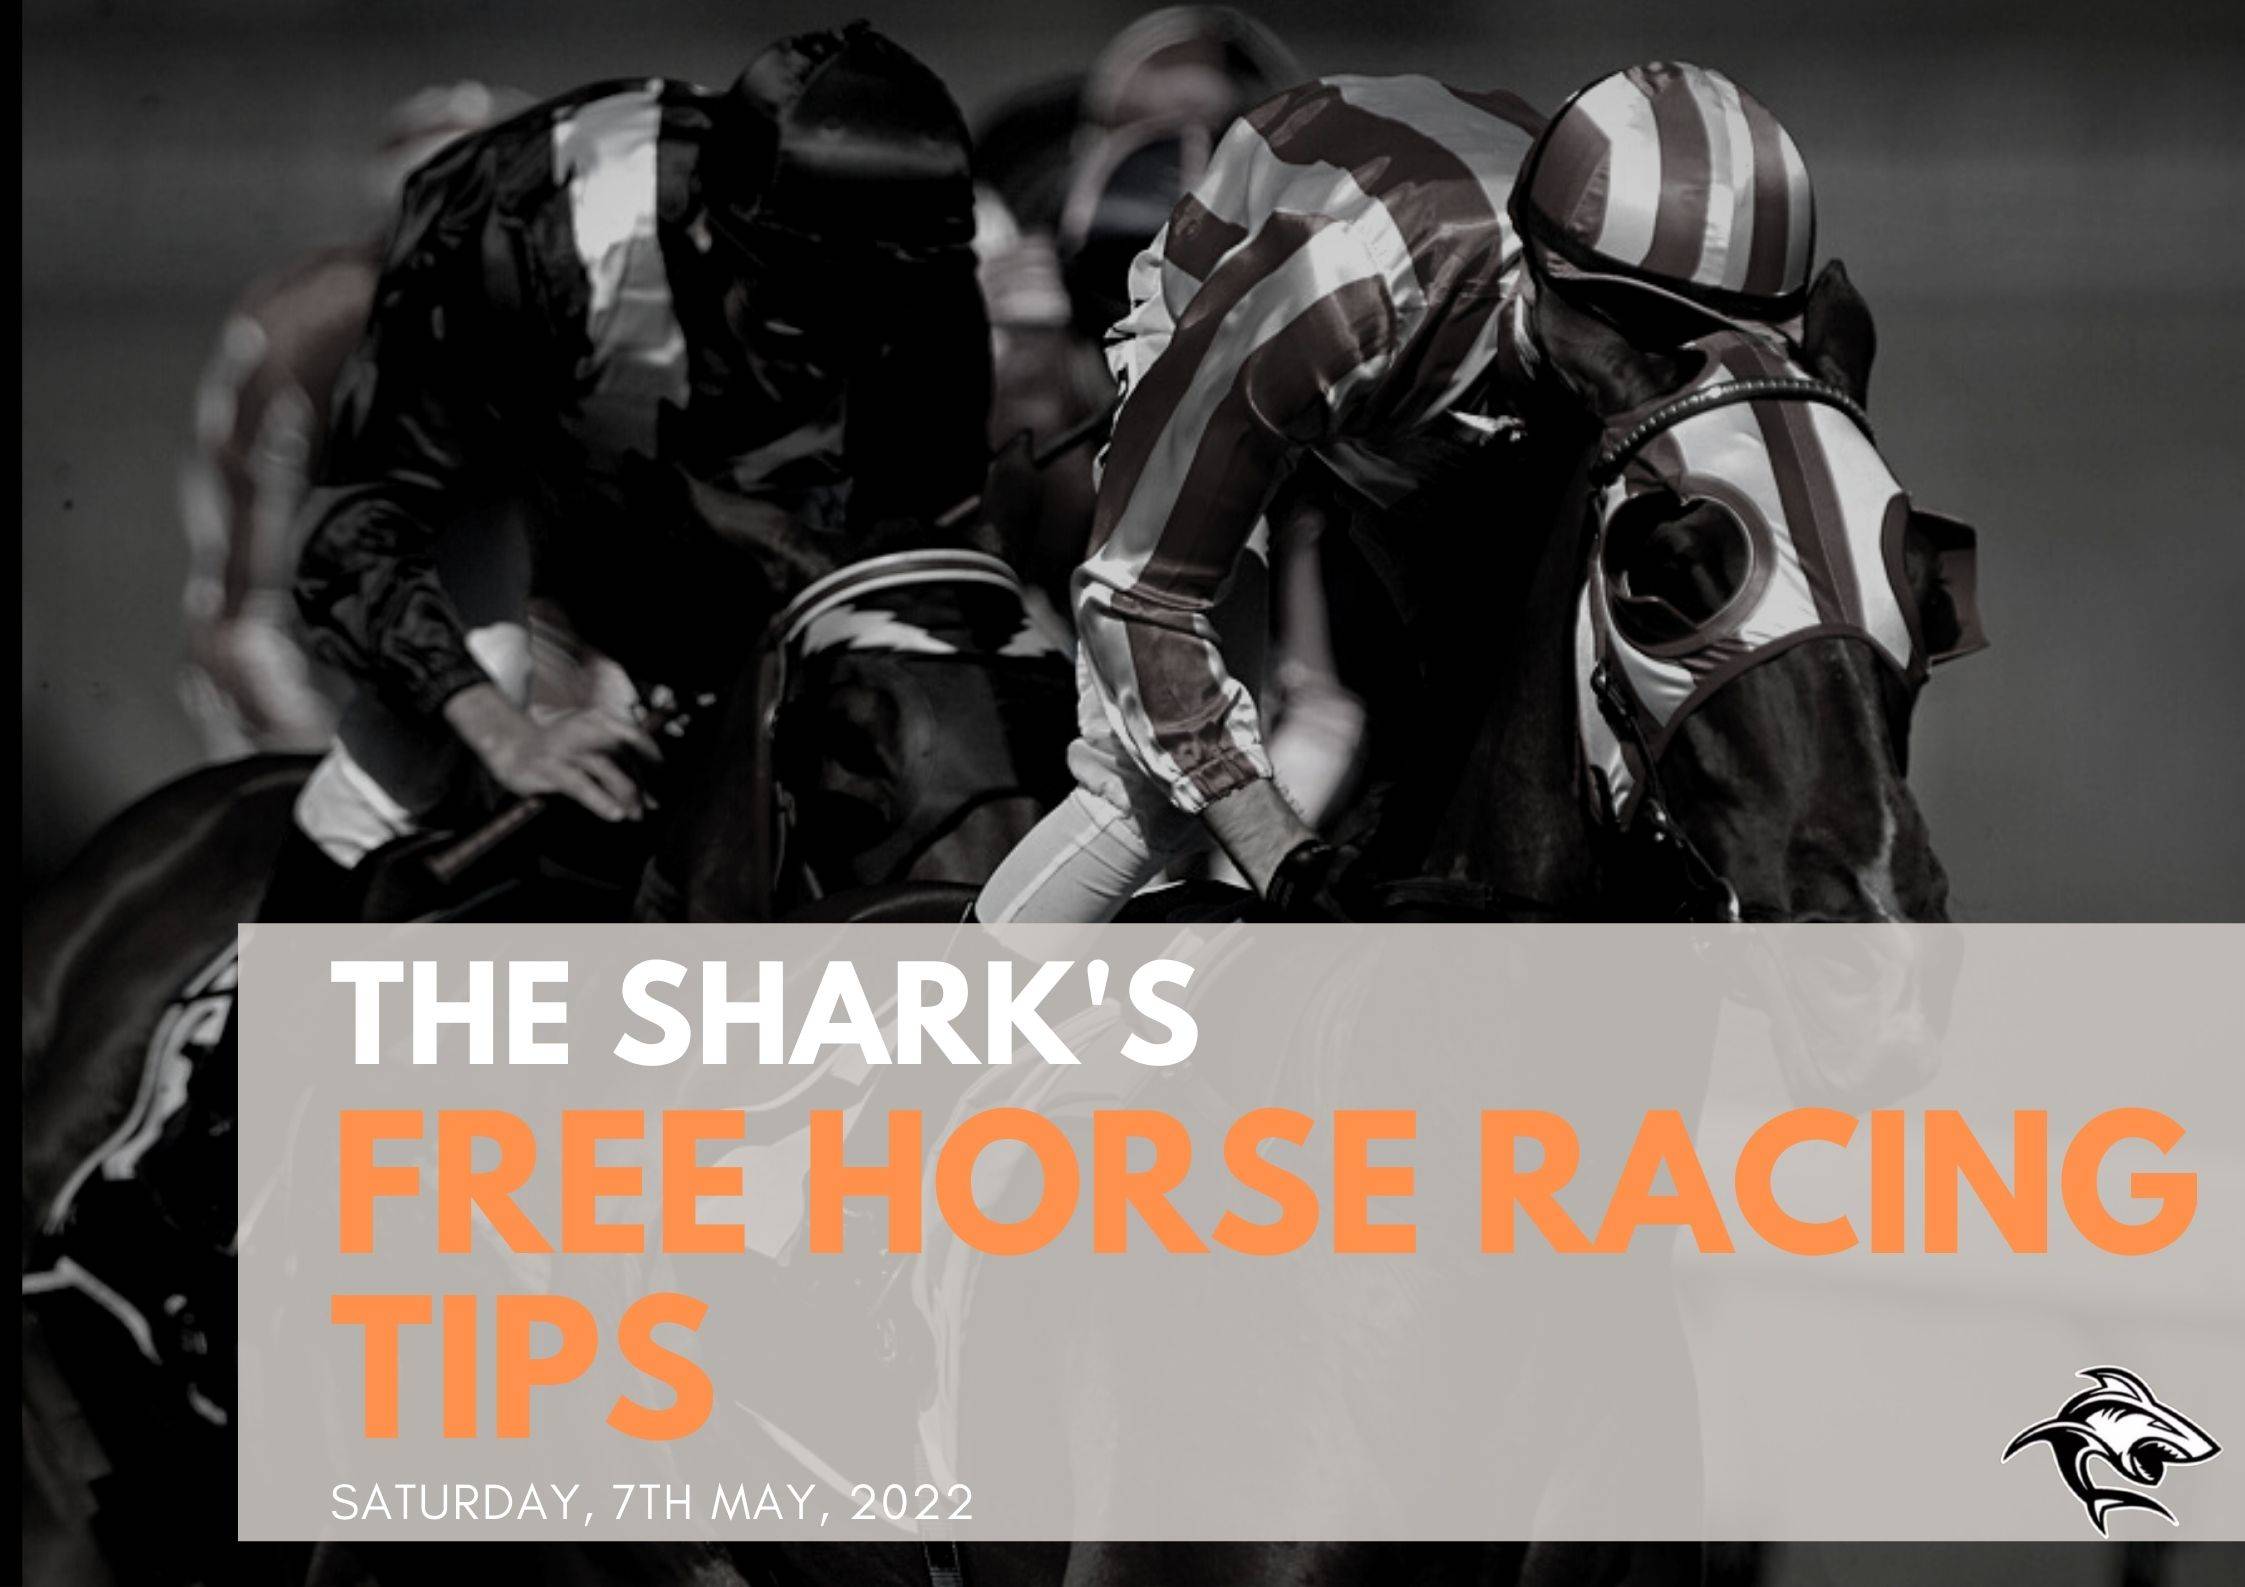 Free Horse Racing Tips - 7th May